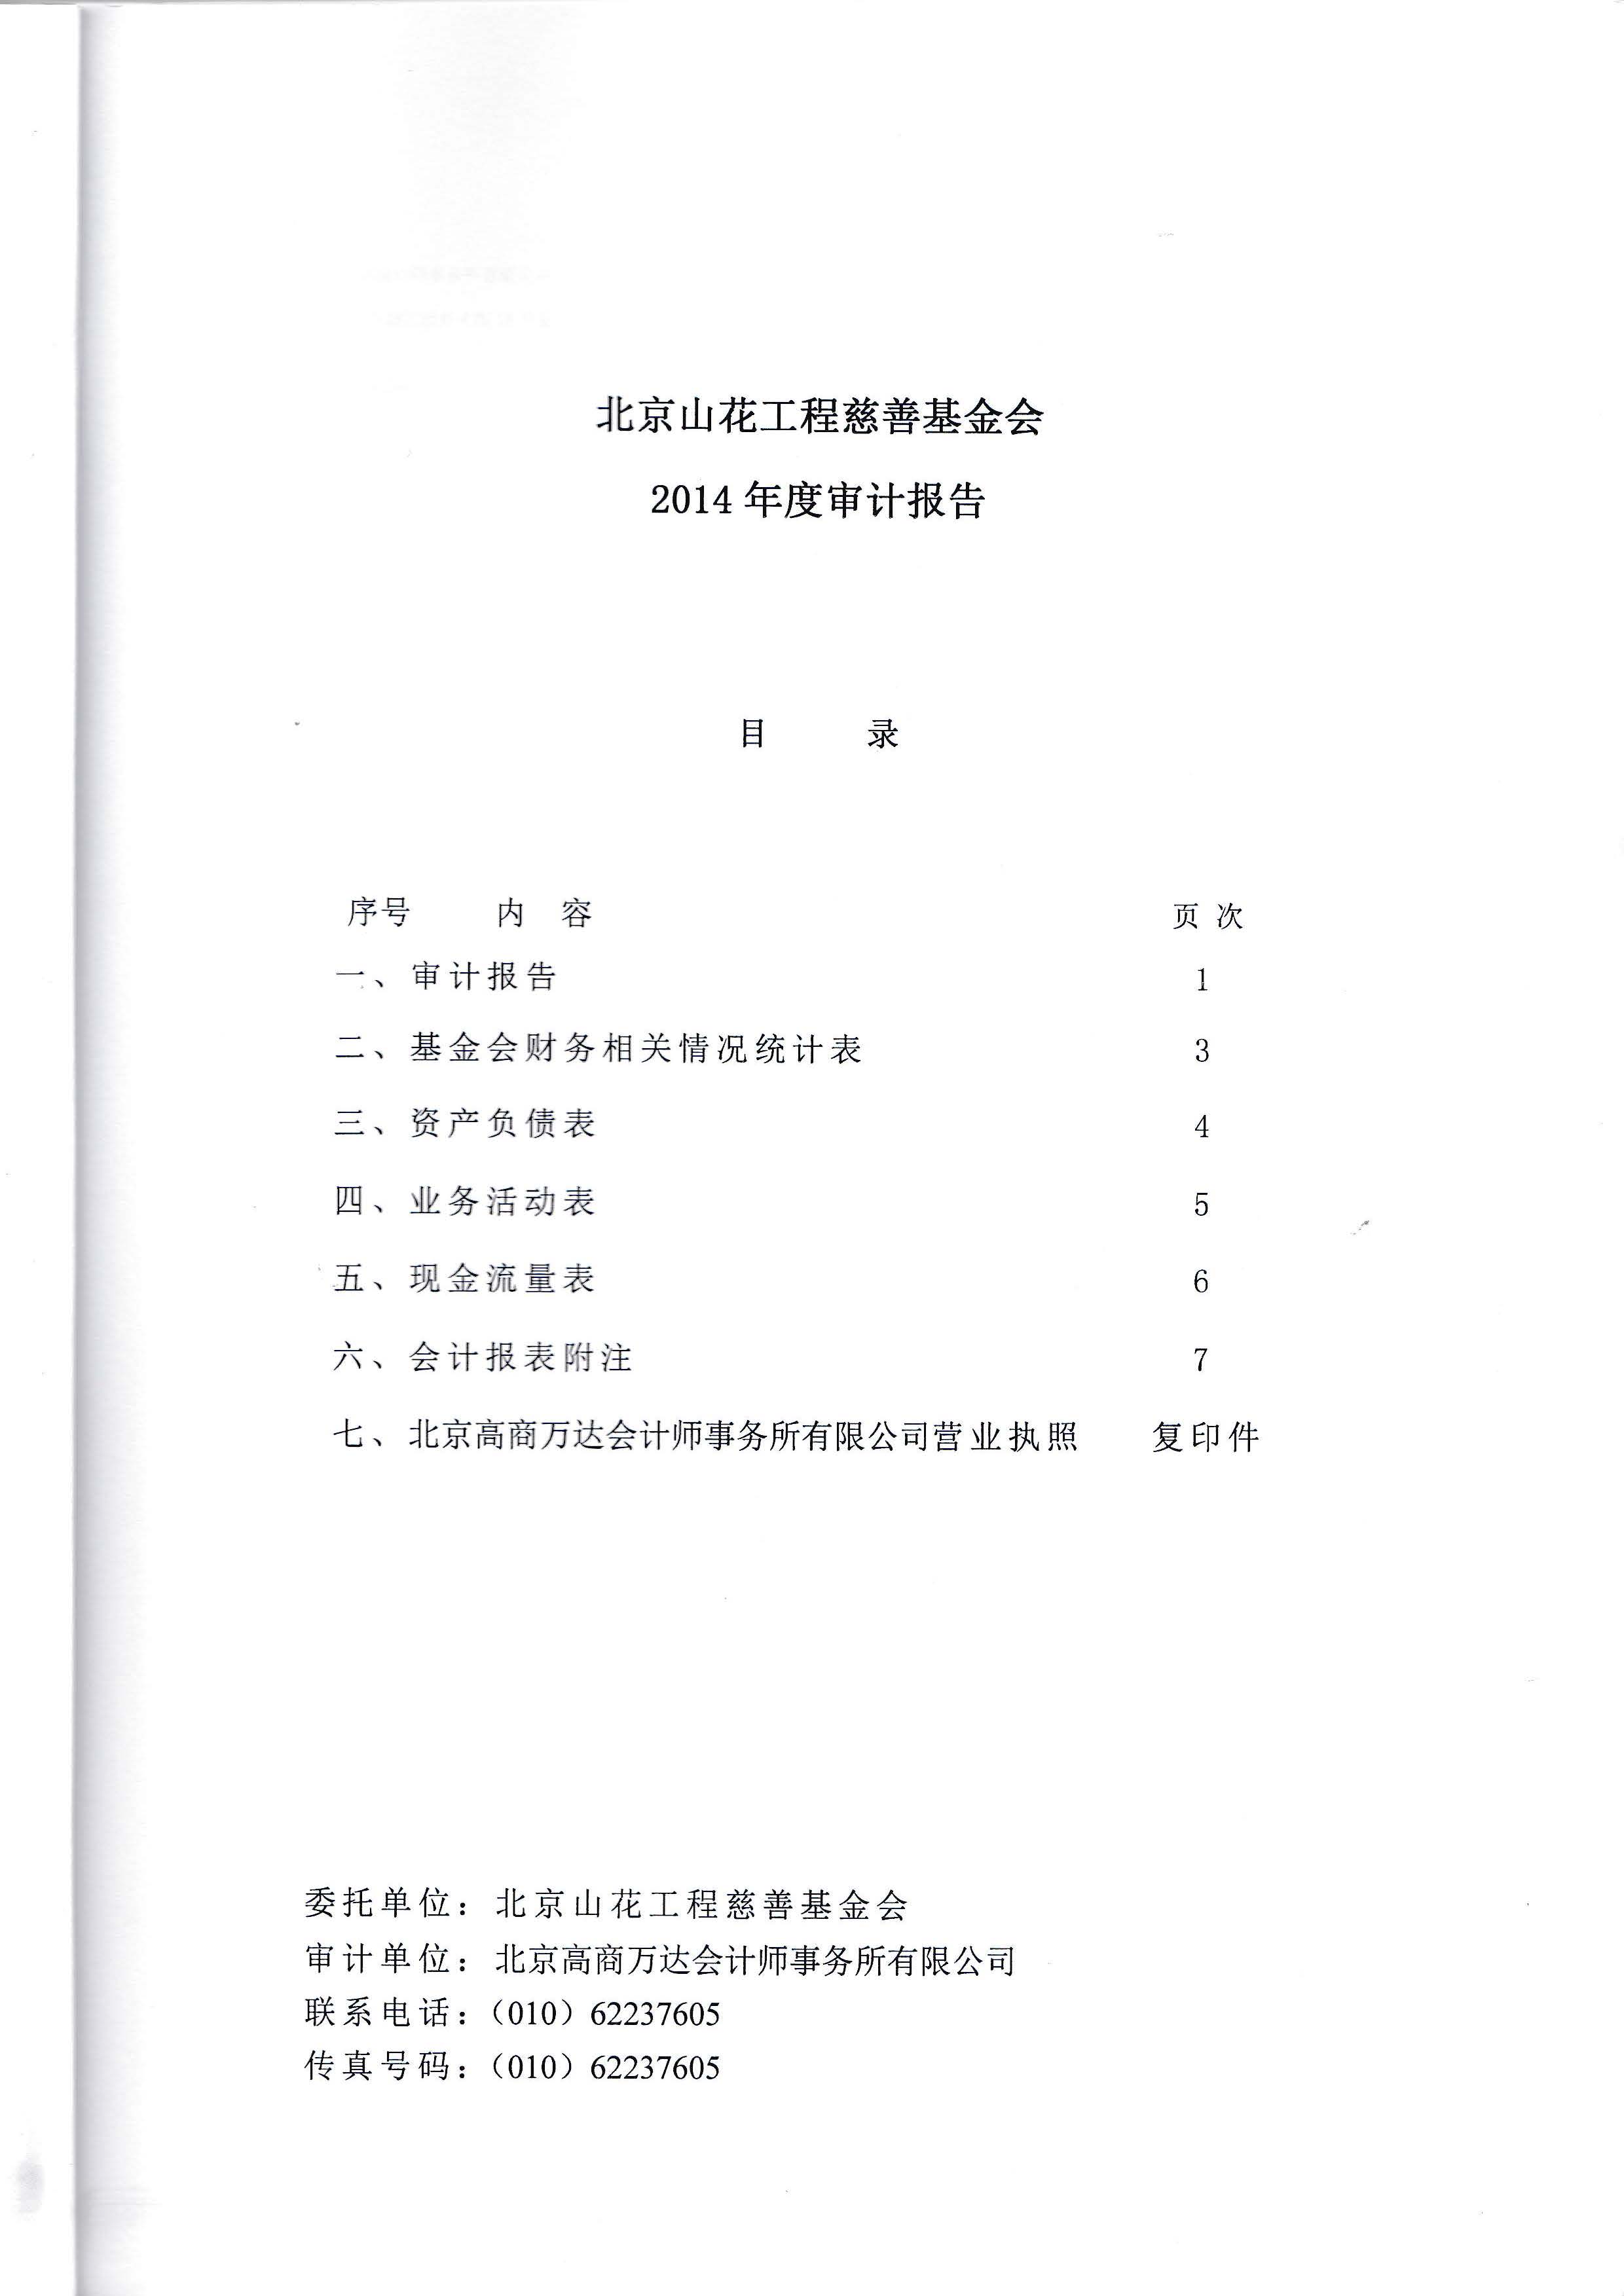 2014年审计报告_页面_02